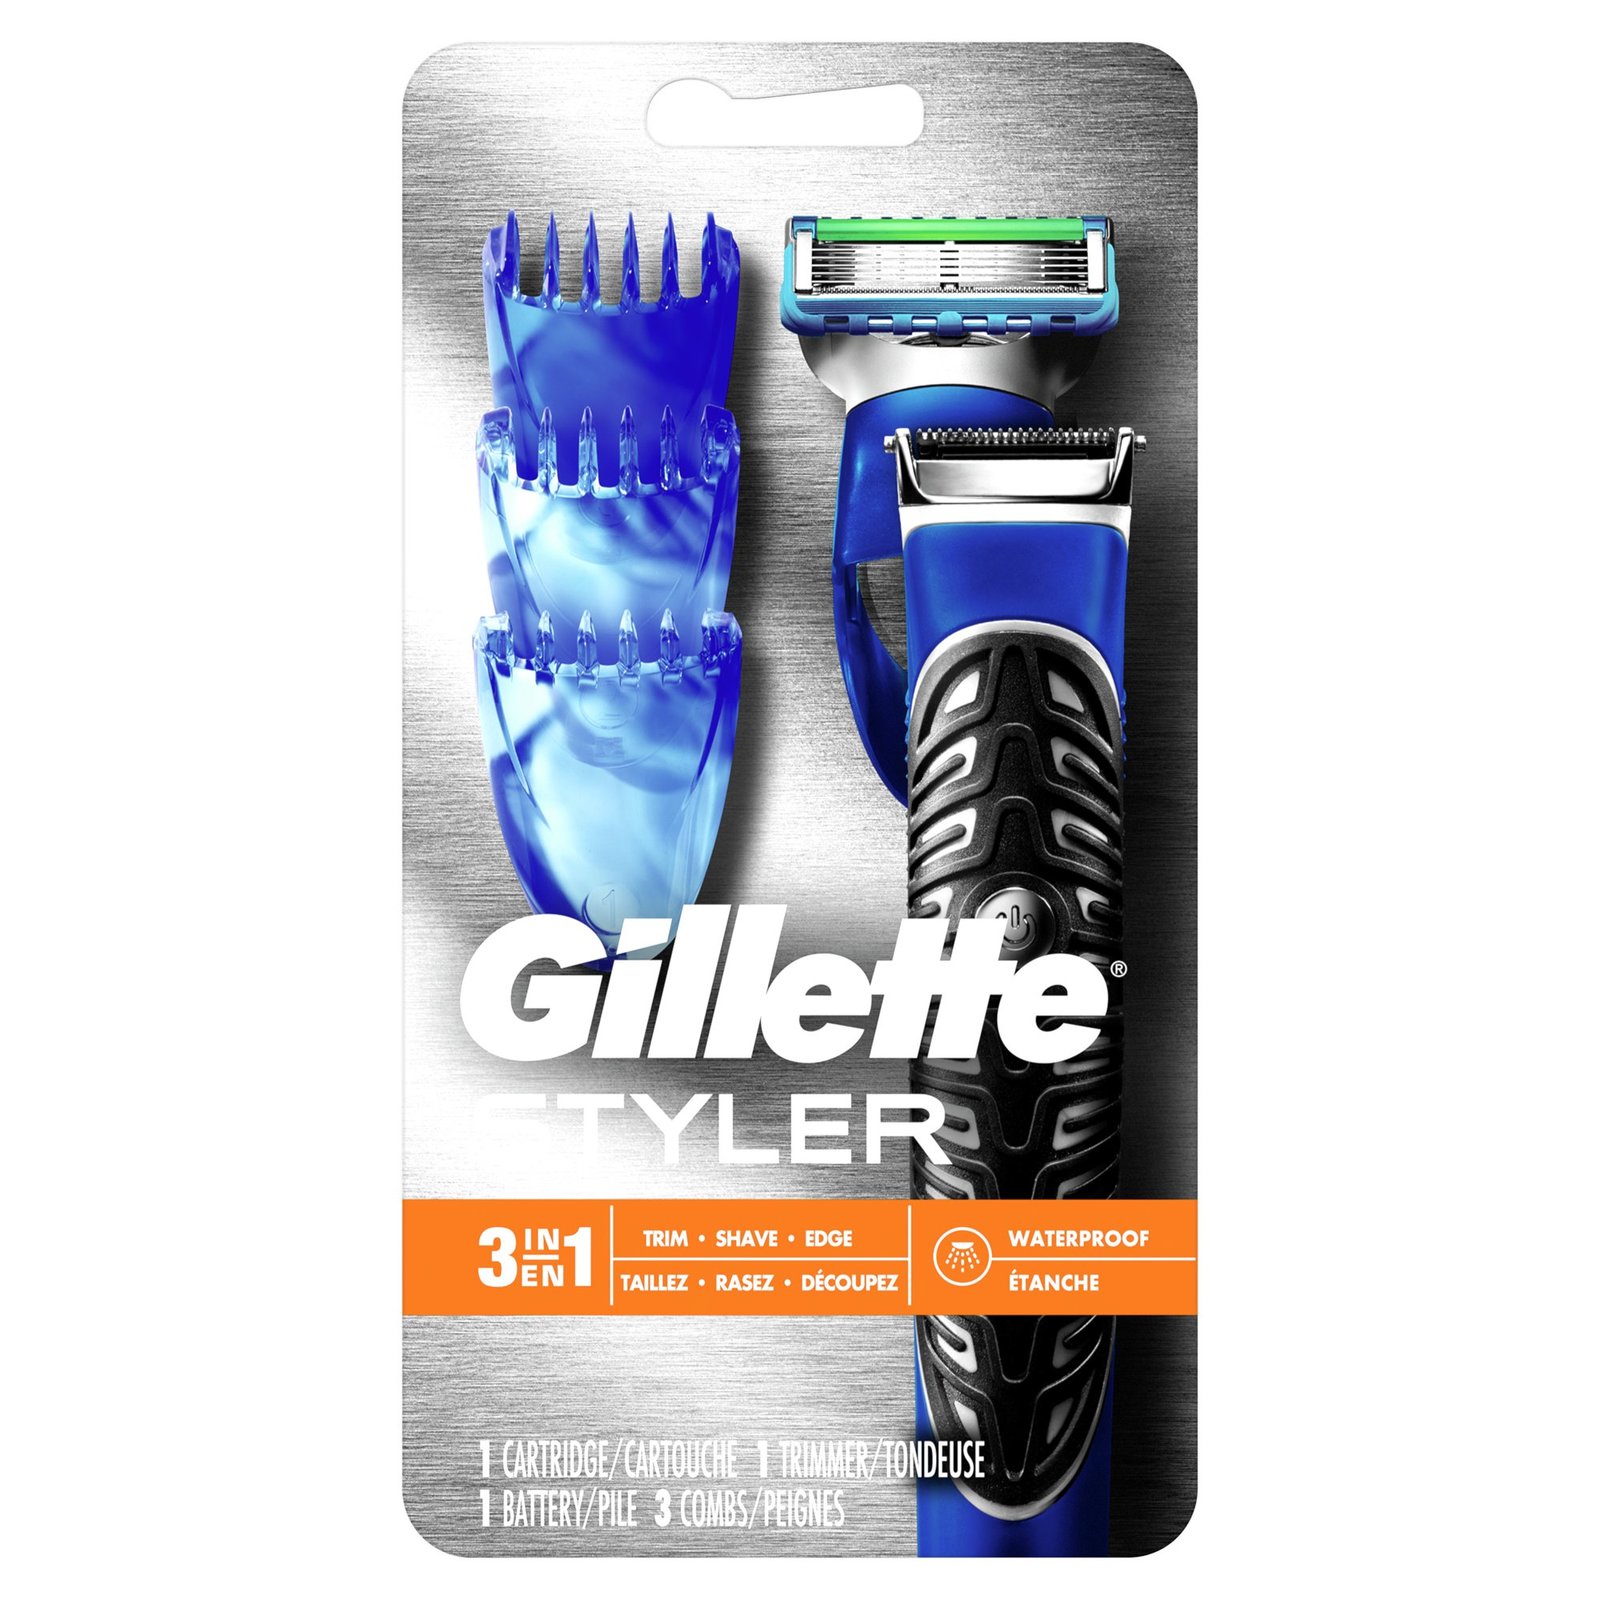 Gillette Styler All Purpose Men's 3-in-1 Precision Beard Trimmer, Razors & Edger